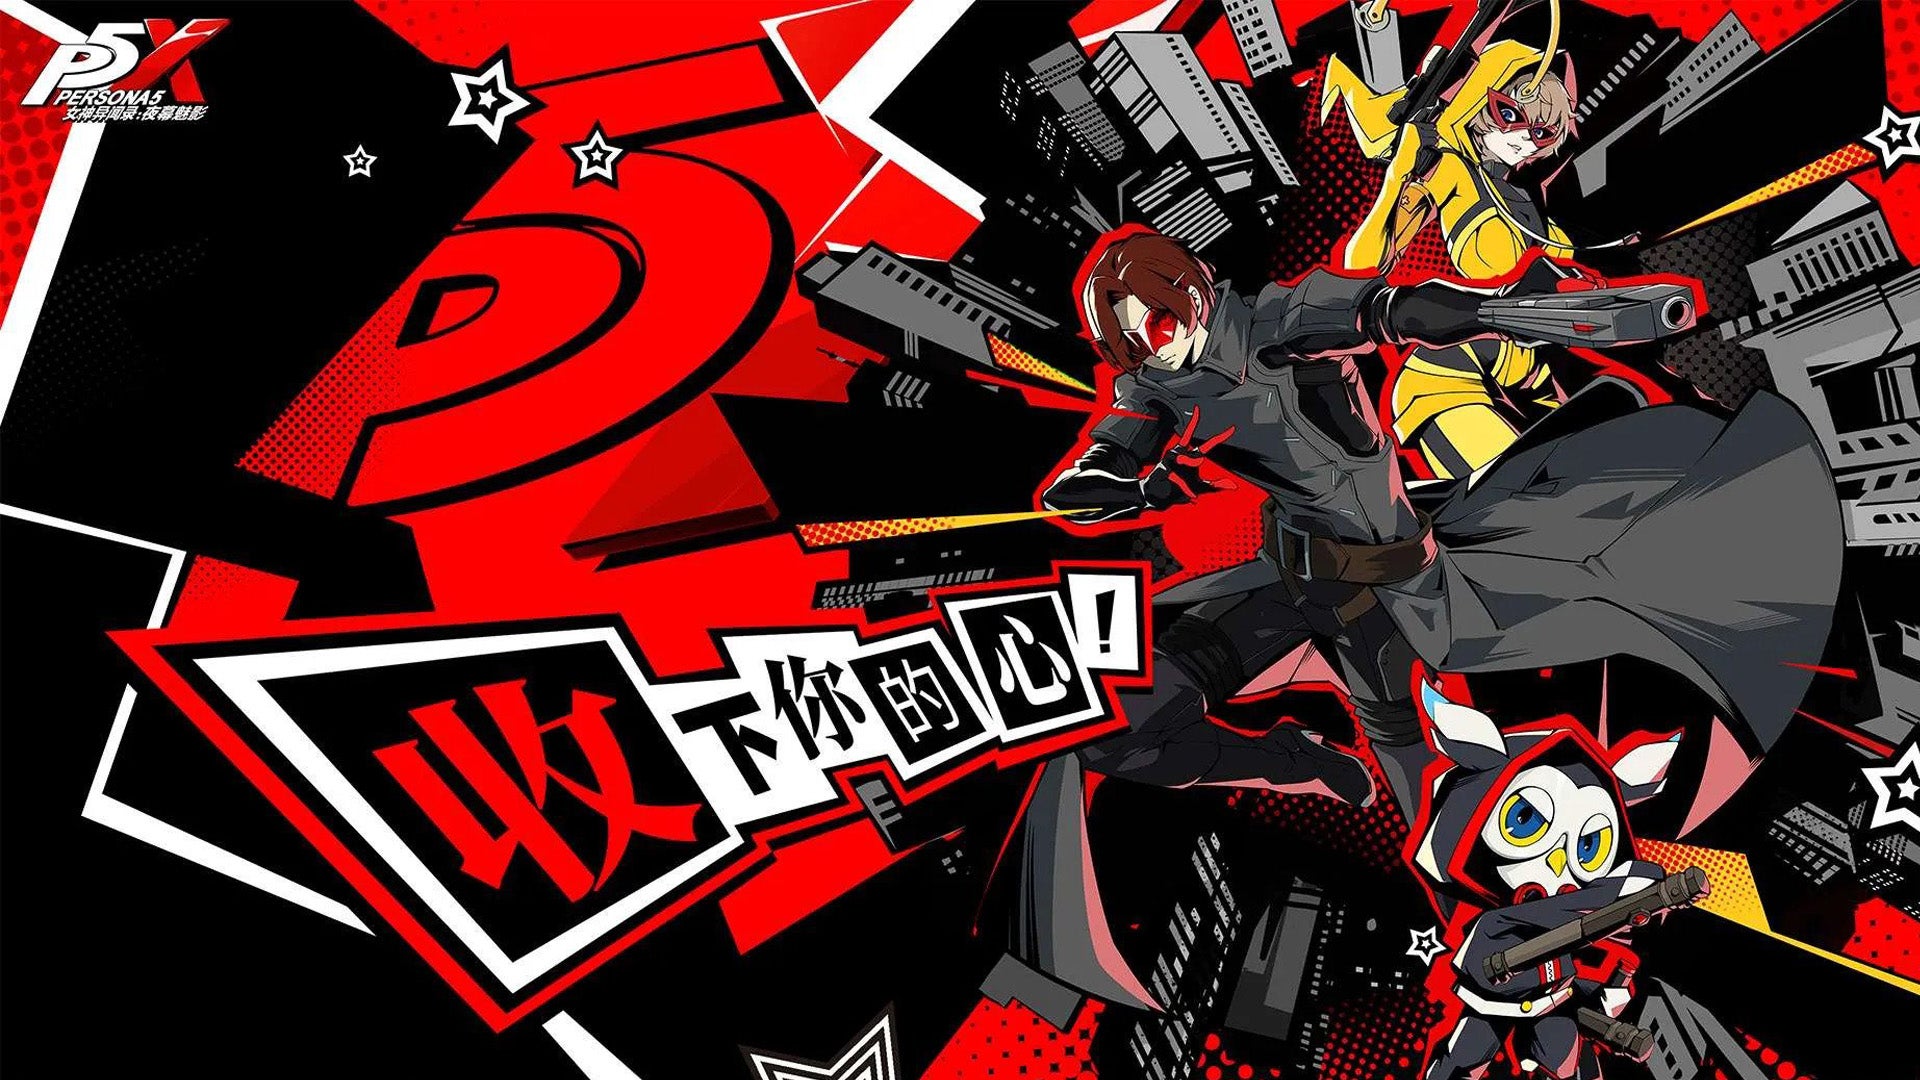 Persona 5 mendapatkan spin-off seluler dengan pemeran karakter baru